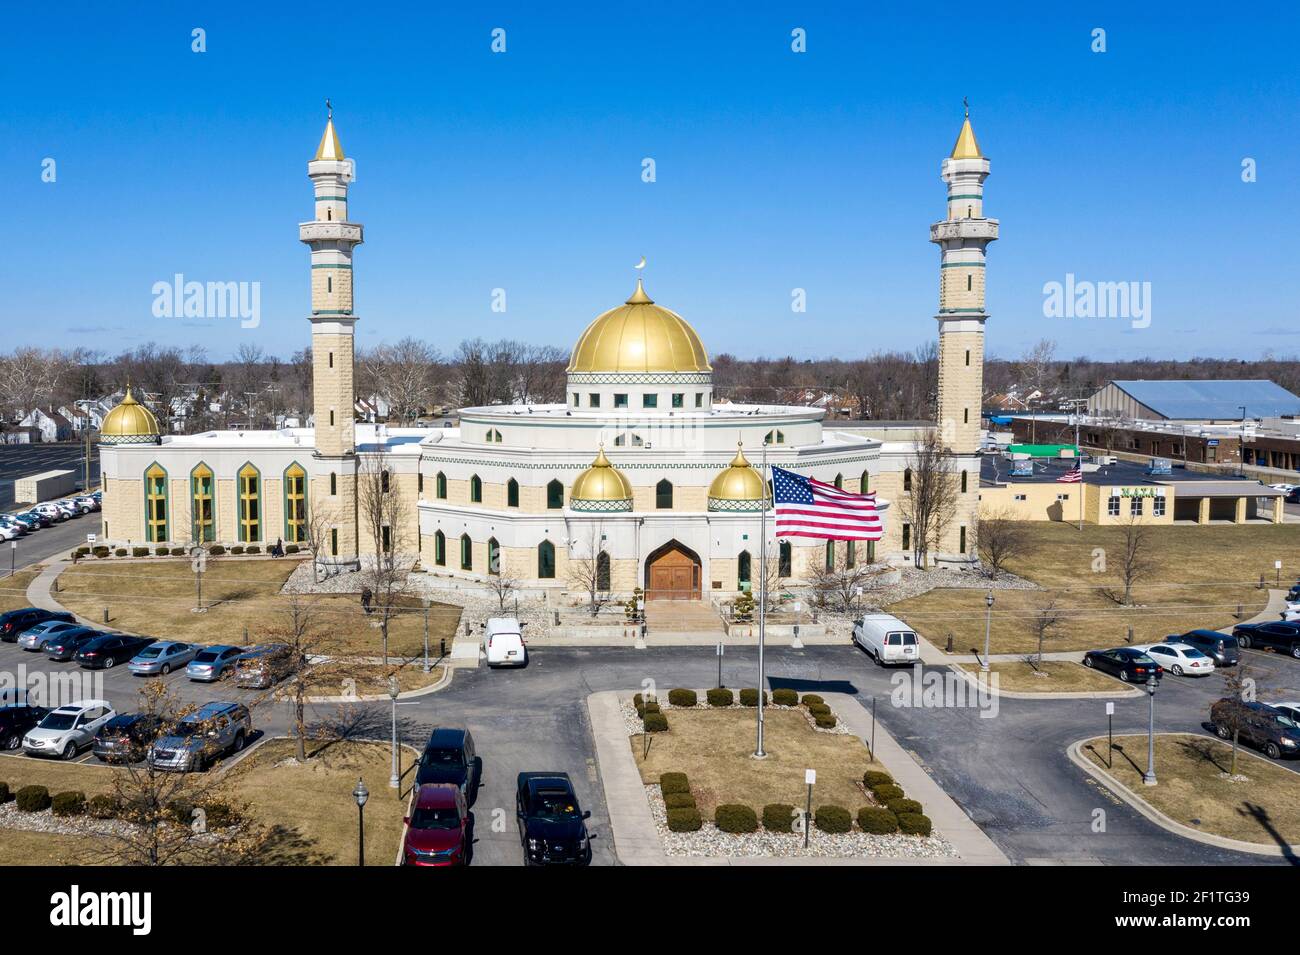 Dearborn, Michigan - le Centre islamique d'Amérique, la plus grande mosquée d'Amérique du Nord. Banque D'Images